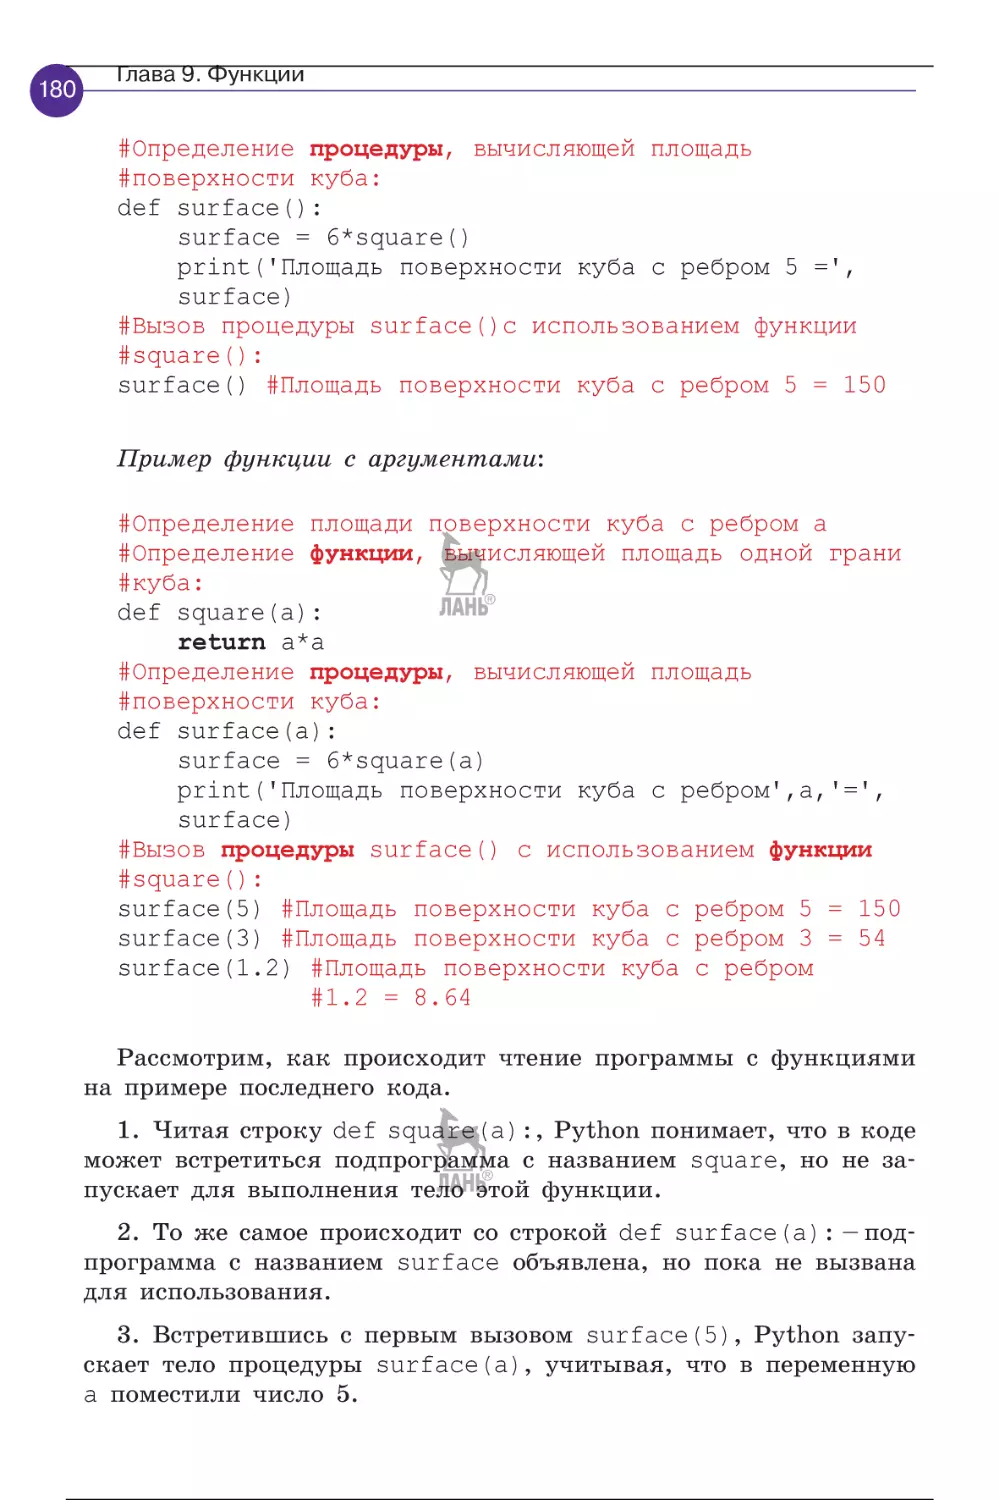 programmirovanie_na_python_pervye_sagi_181-200